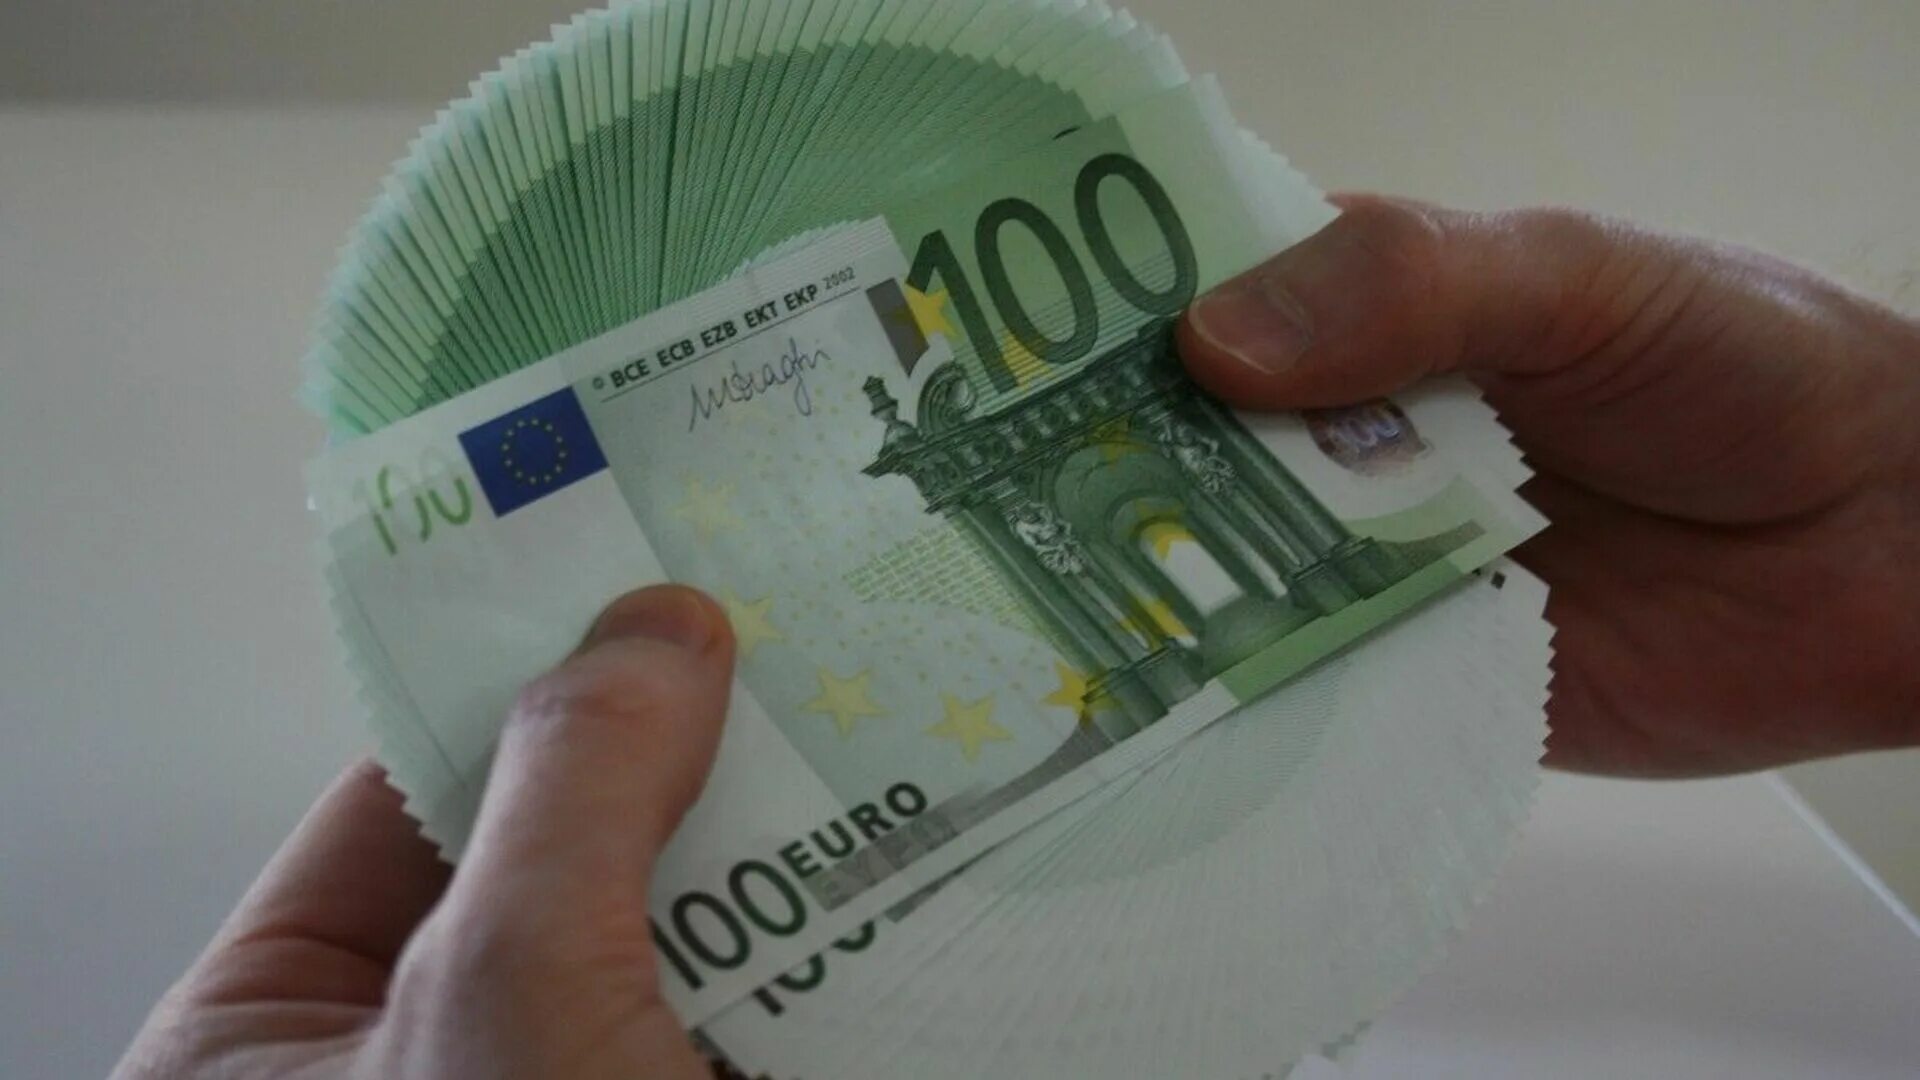 Сколько 100000 евро. 5000 Евро. Тыща евро. Фото 5000 евро. 5000 Тыс евро.